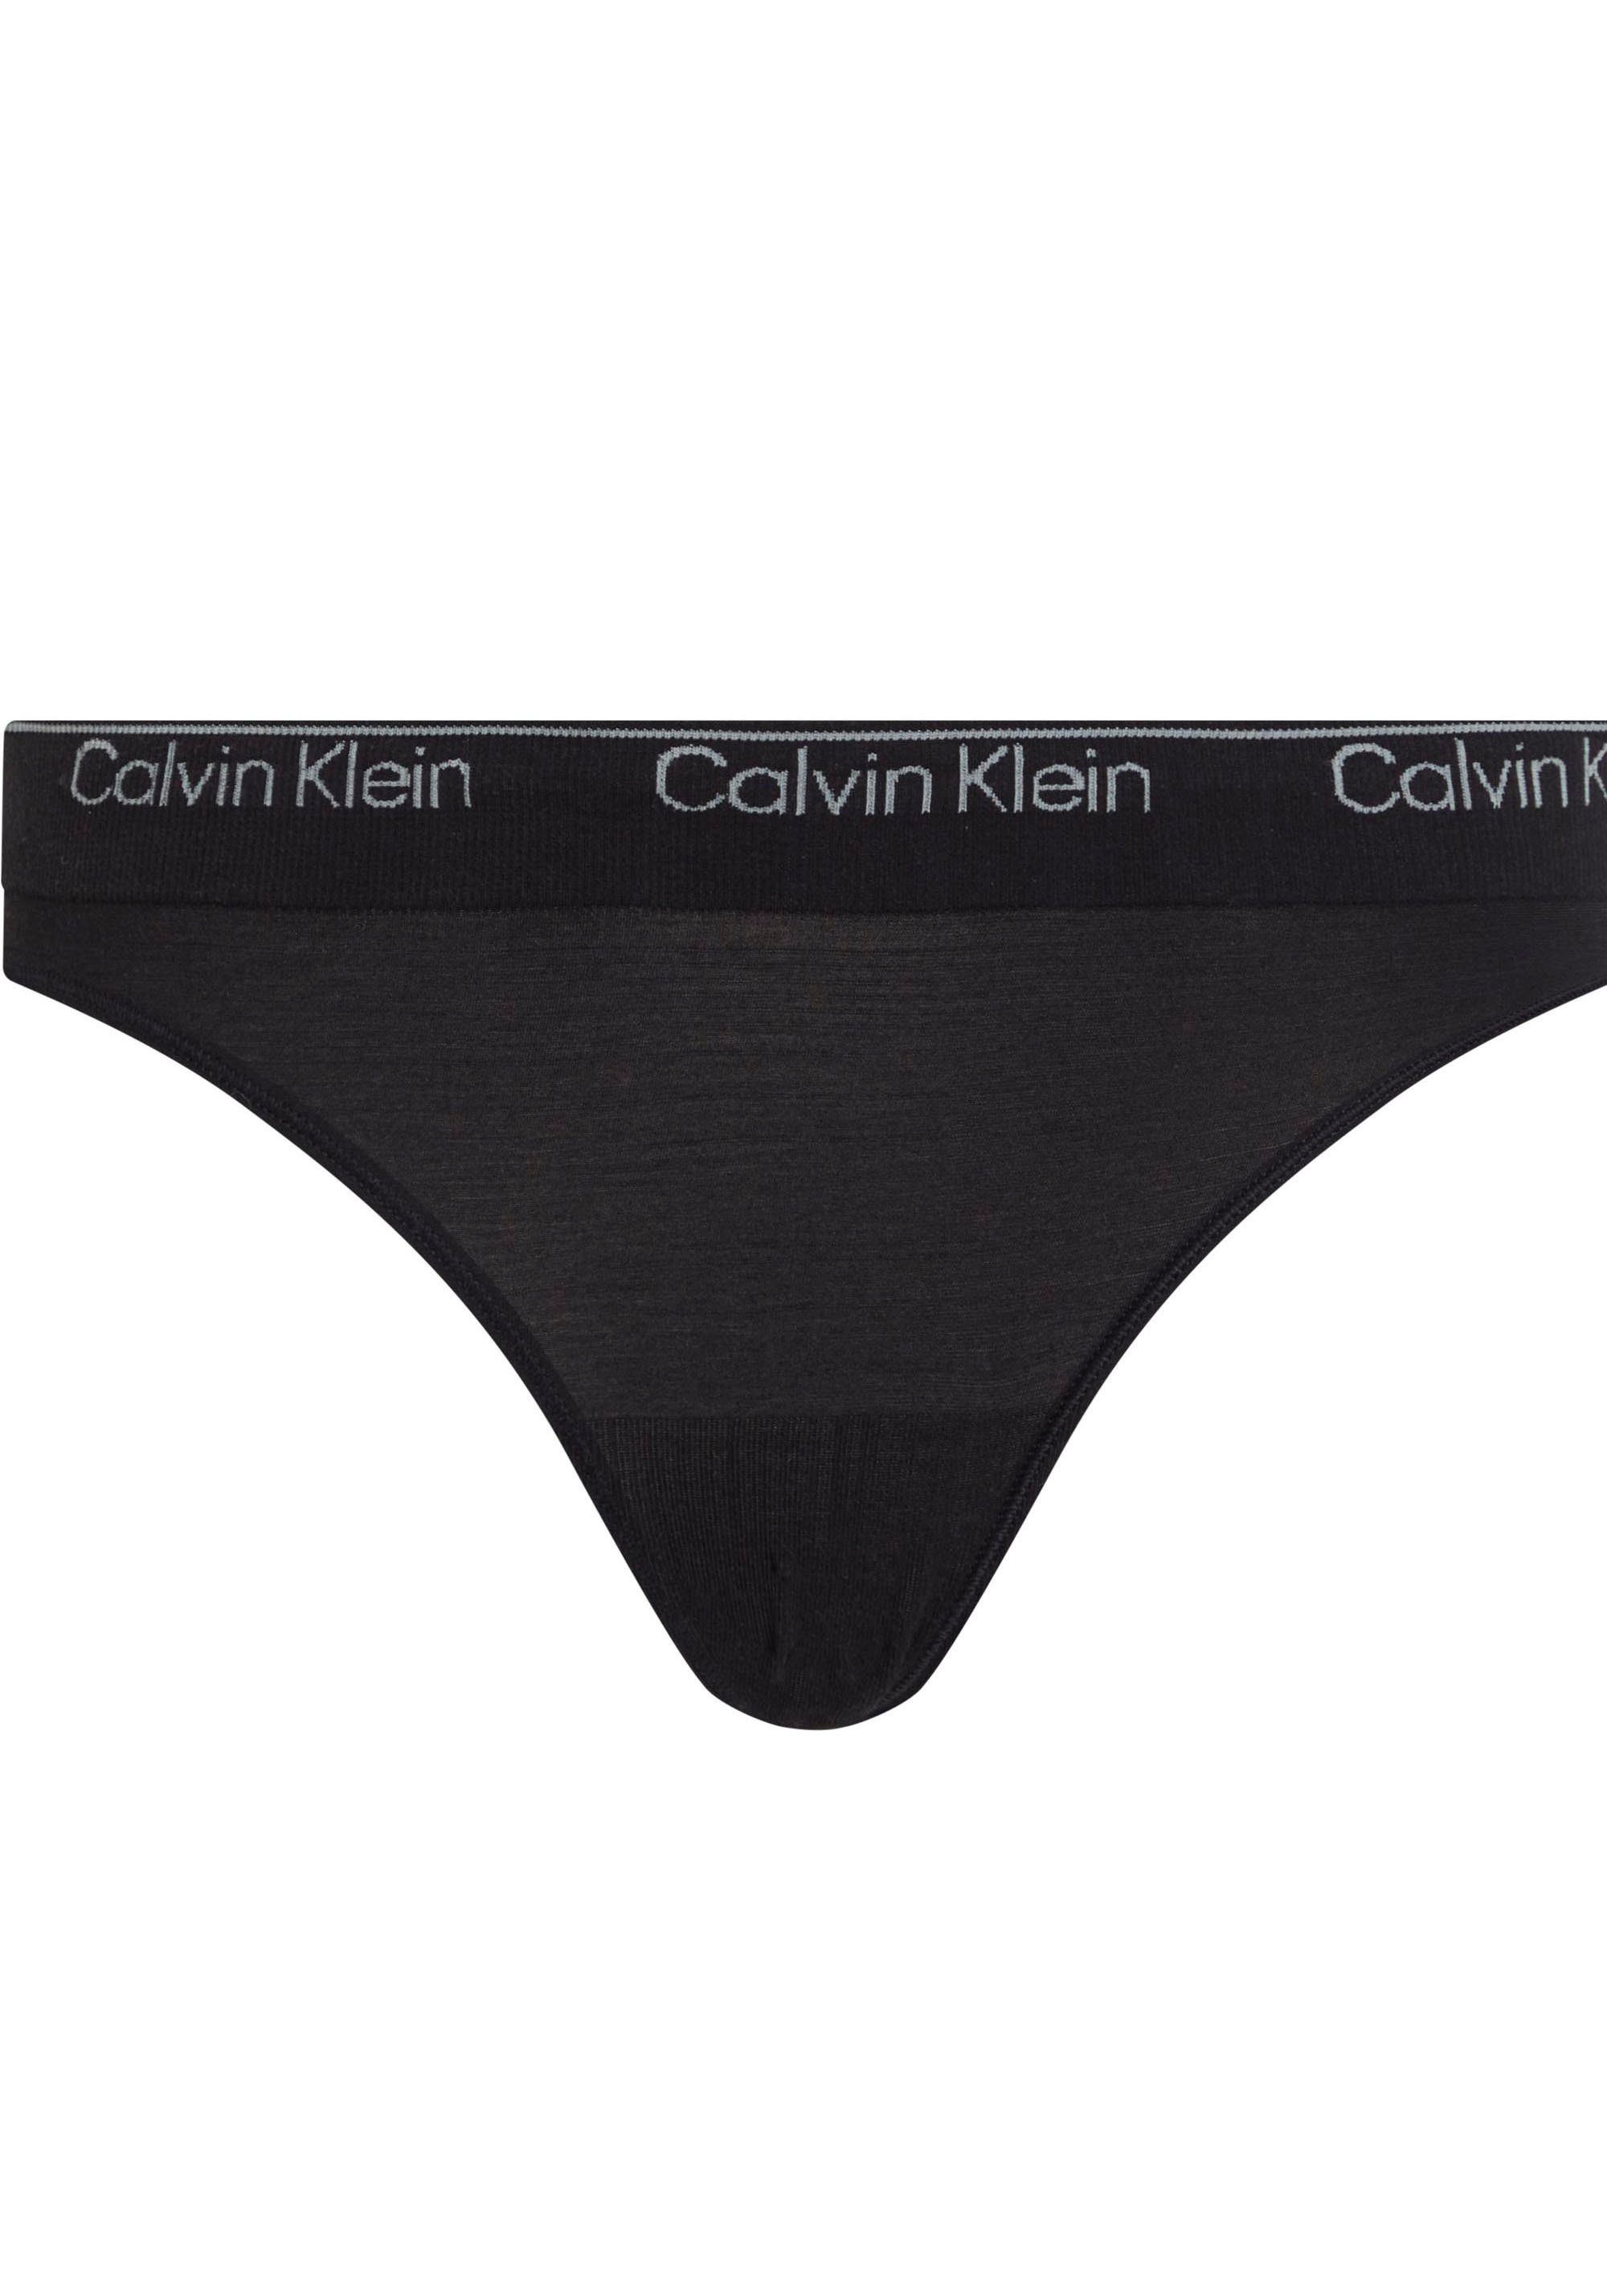 von CK-Logo am Calvin mit Klein Klein Bikinislip Calvin Underwear Bund, BIKINI Bikinislip Underwear